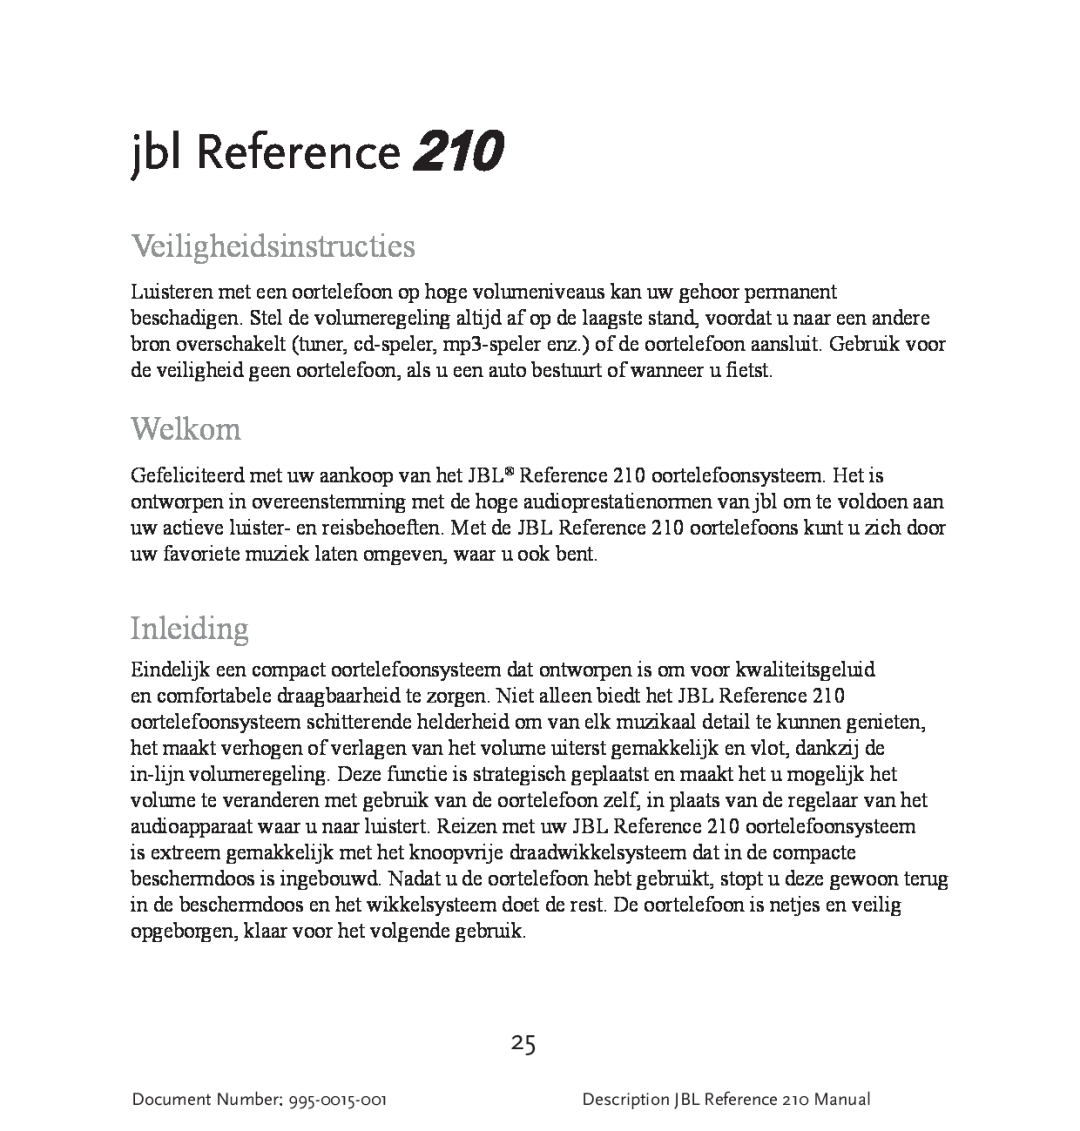 JBL 210 manual jbl Reference, Veiligheidsinstructies, Welkom, Inleiding 